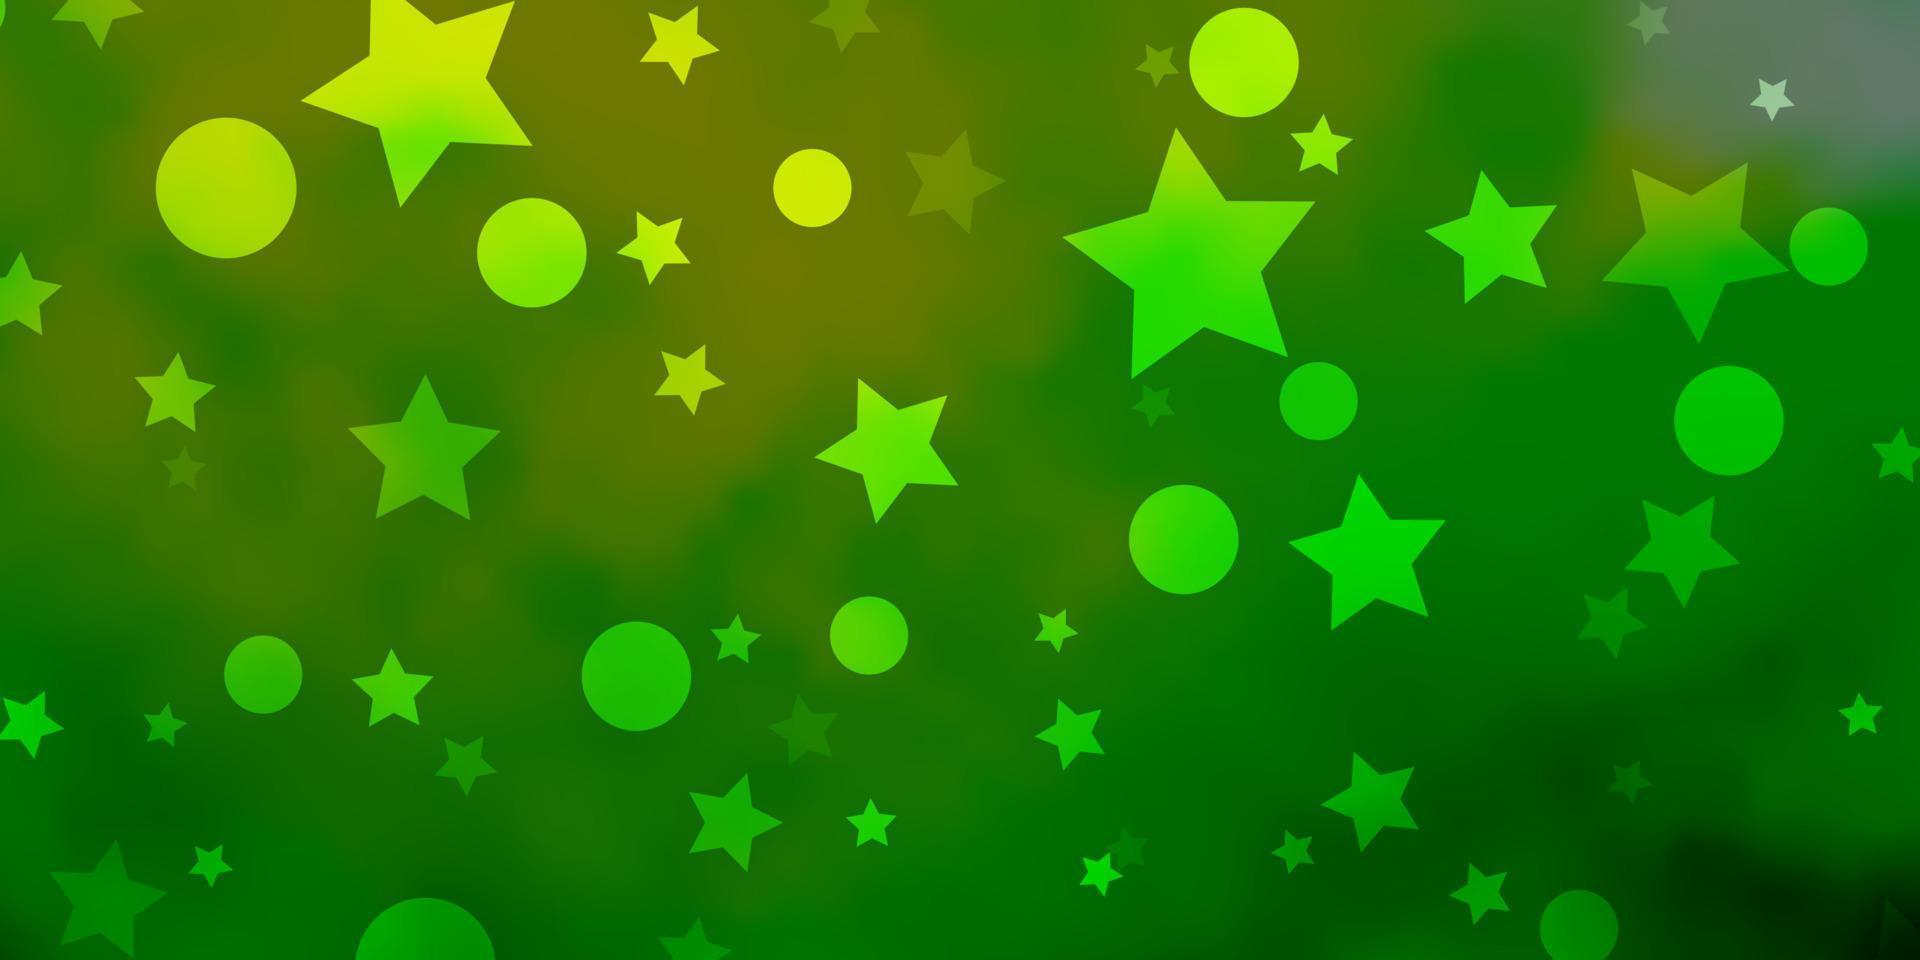 sfondo vettoriale verde chiaro, giallo con cerchi, stelle.